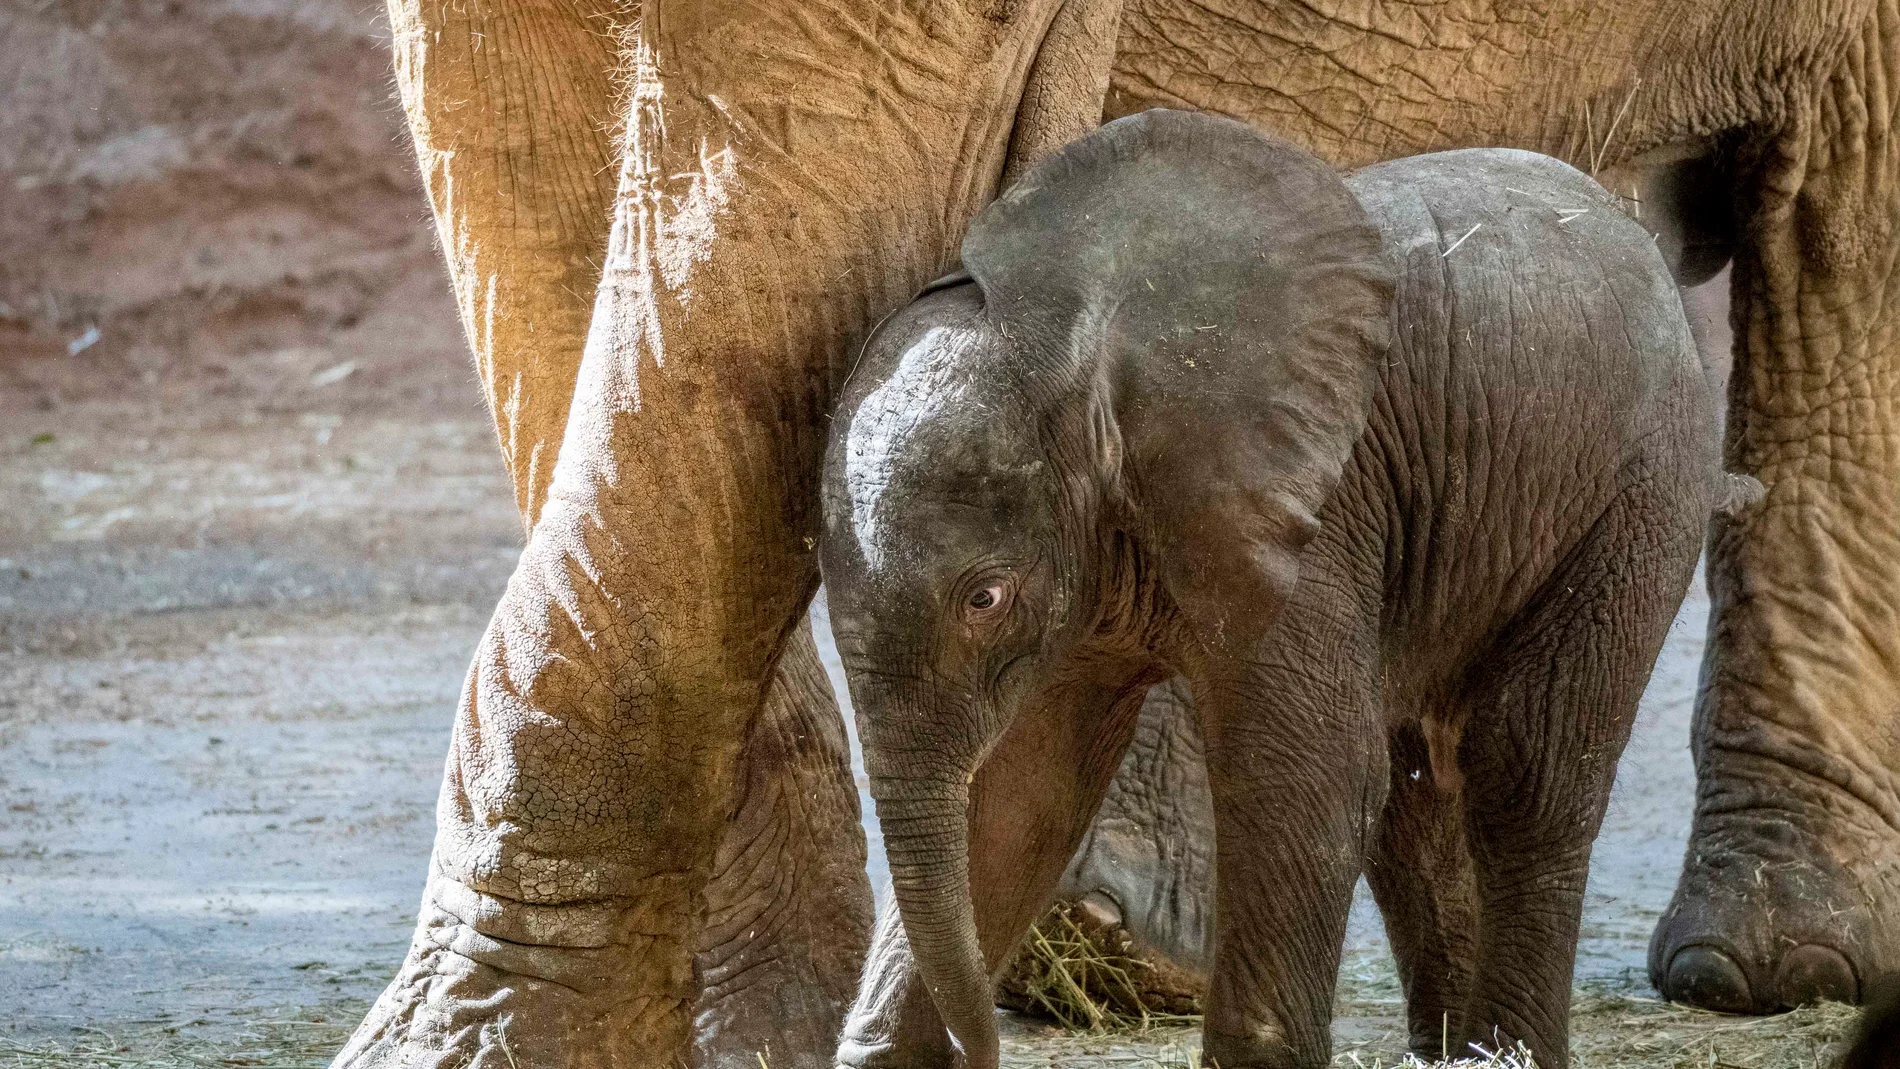 Imagen de la cría del elefante junto a su madre